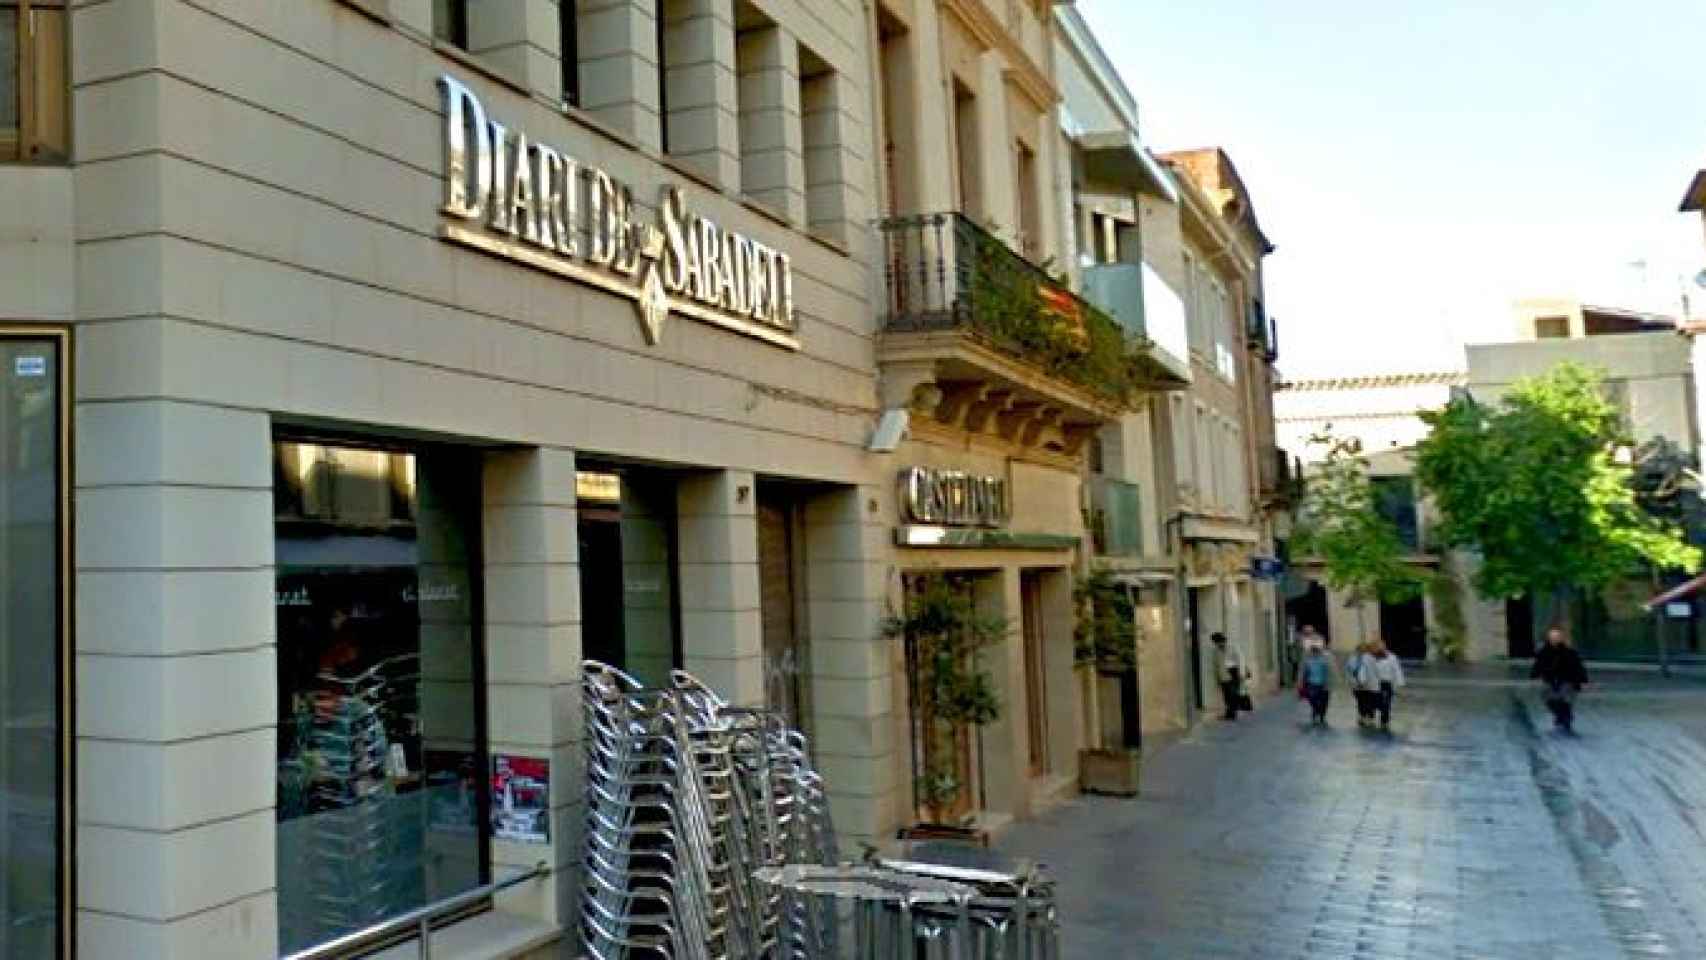 La sede del 'Diari de Sabadell', situada en la calle Sant Quirze de la ciudad está a la venta / CG